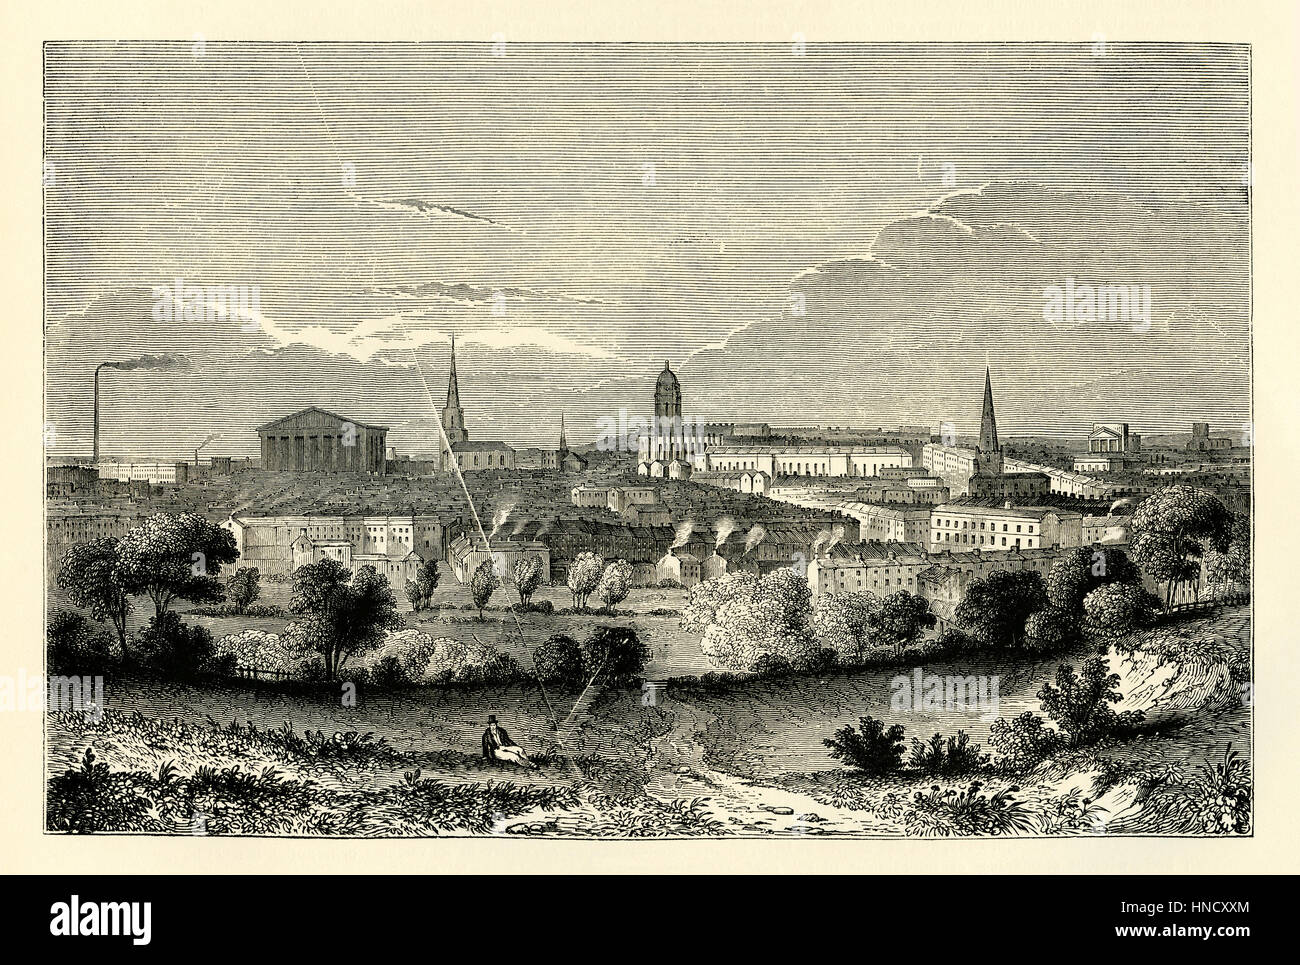 Birmingham, West Midlands, Inglaterra - un viejo grabado c. 1840. Una ciudad de mercado en la edad media, Birmingham creció rápidamente en la revolución industrial Foto de stock